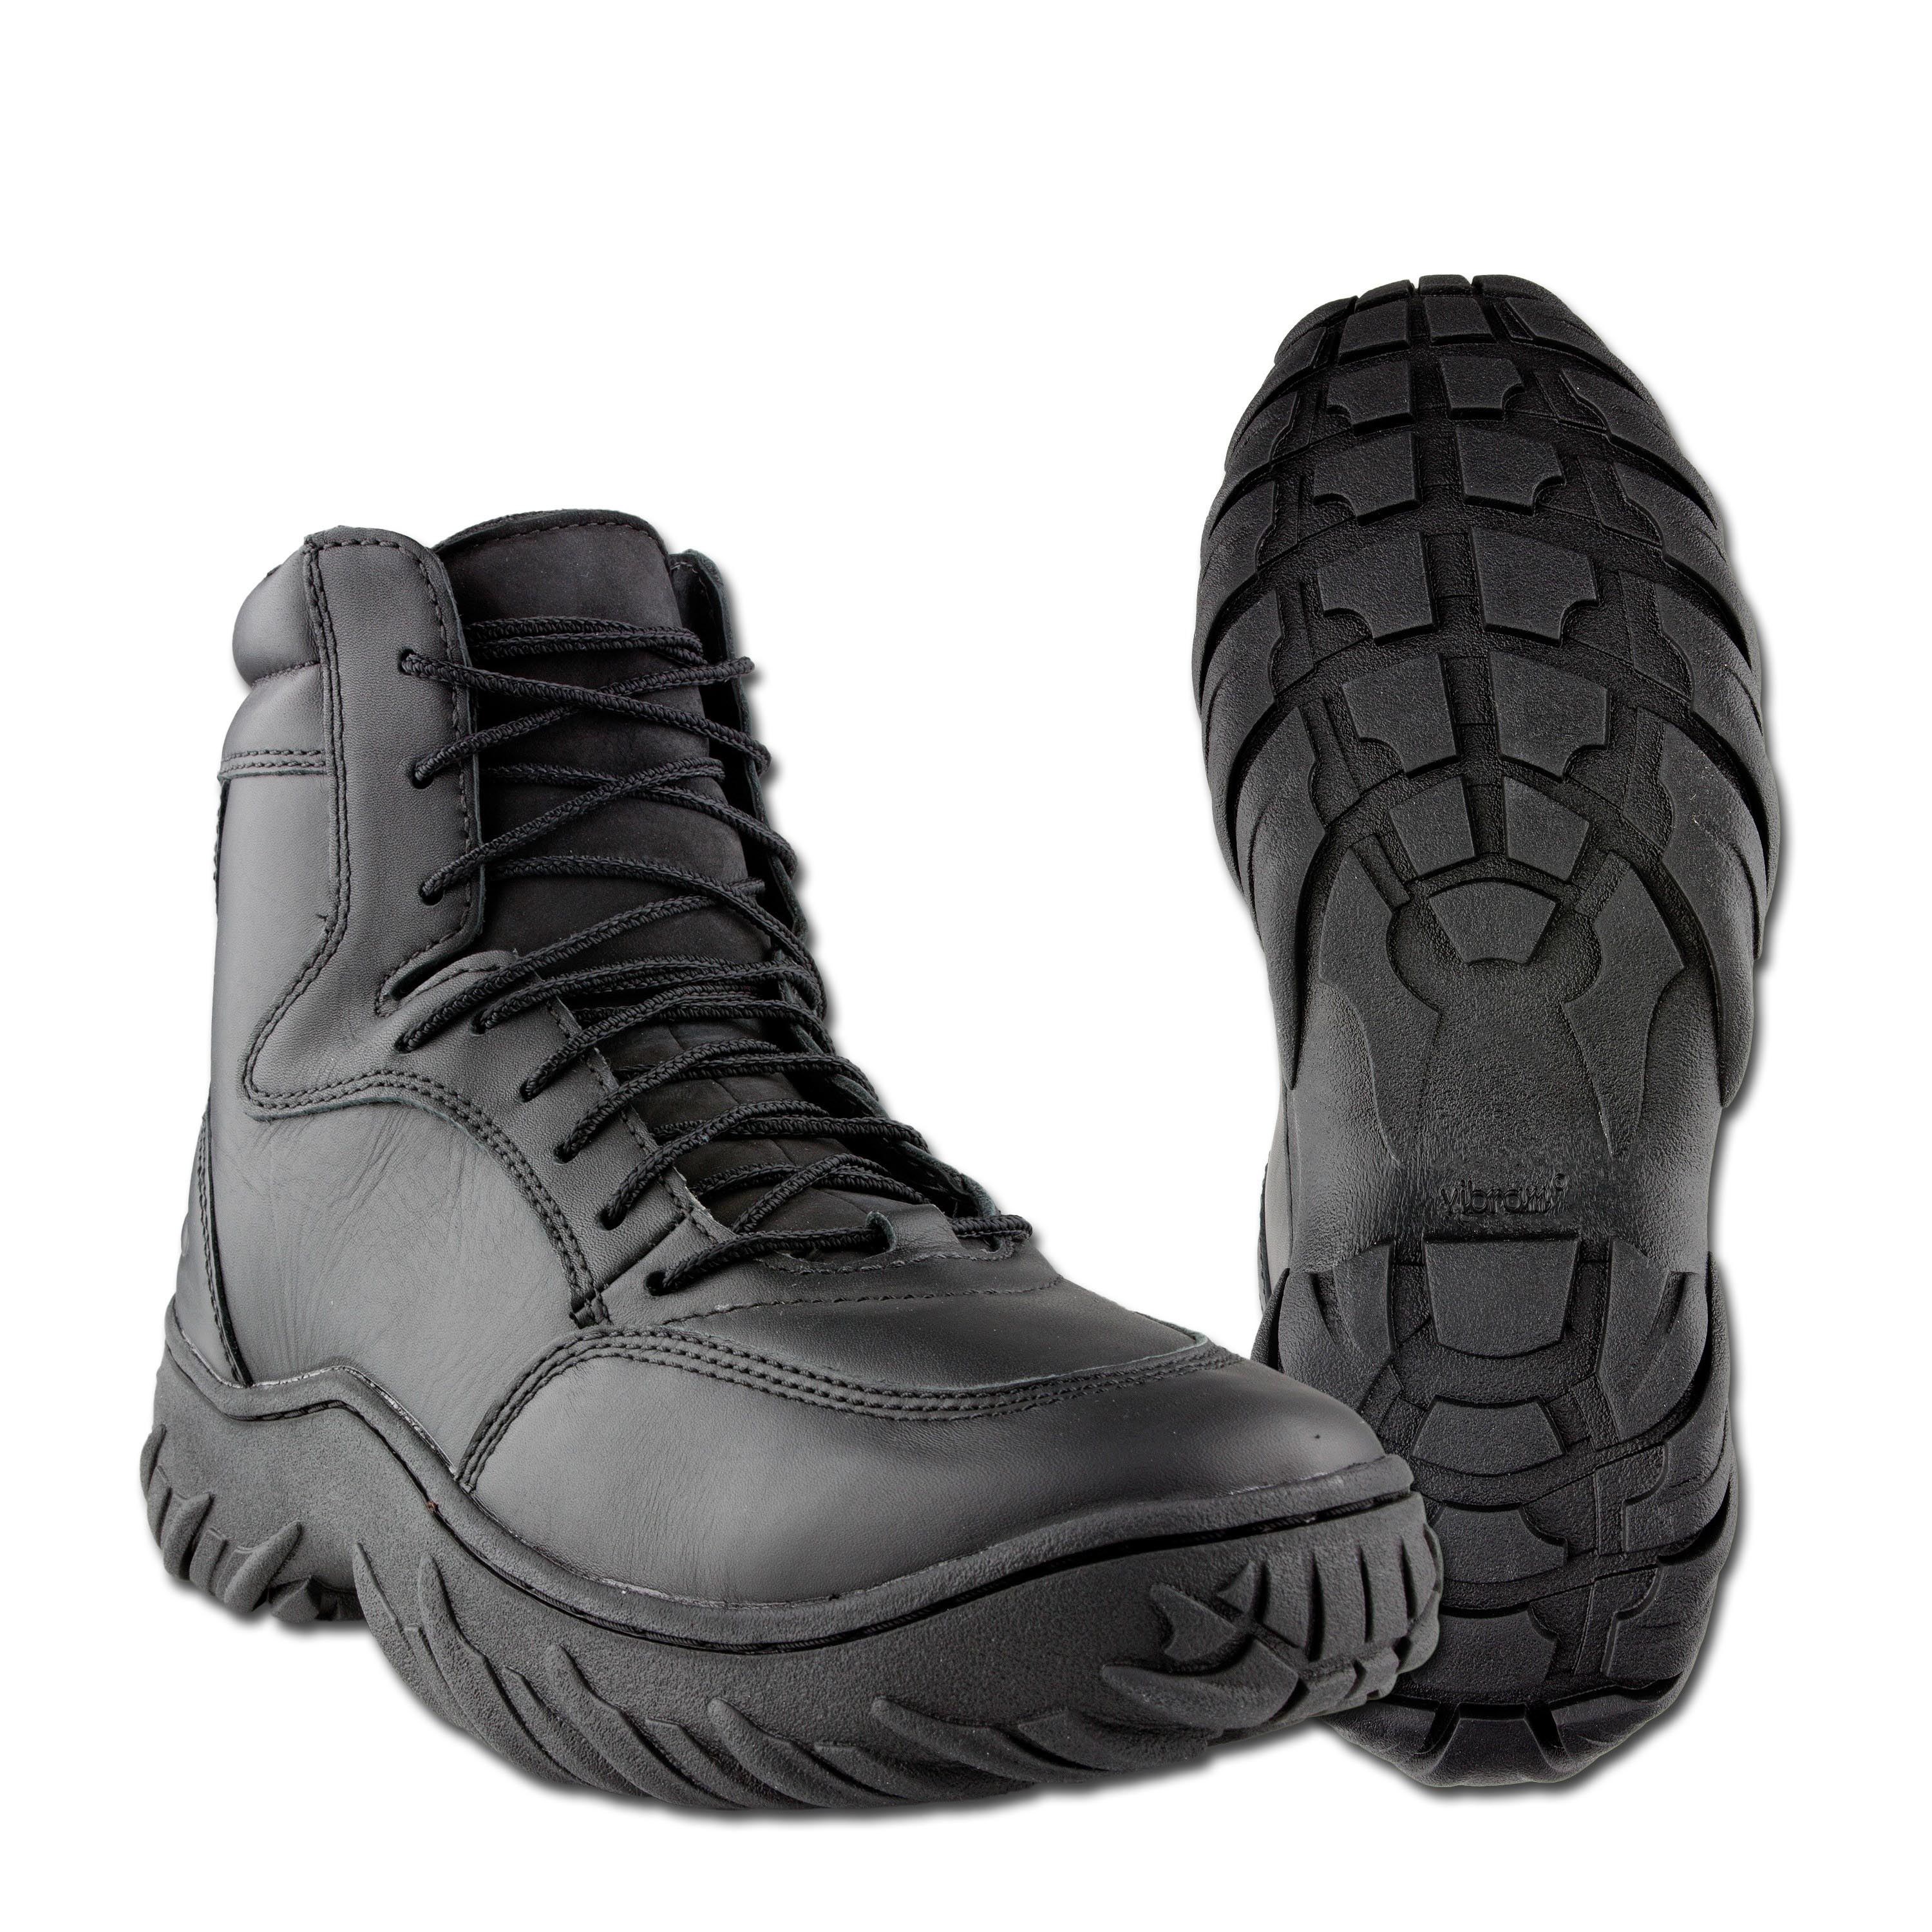 oakley boots